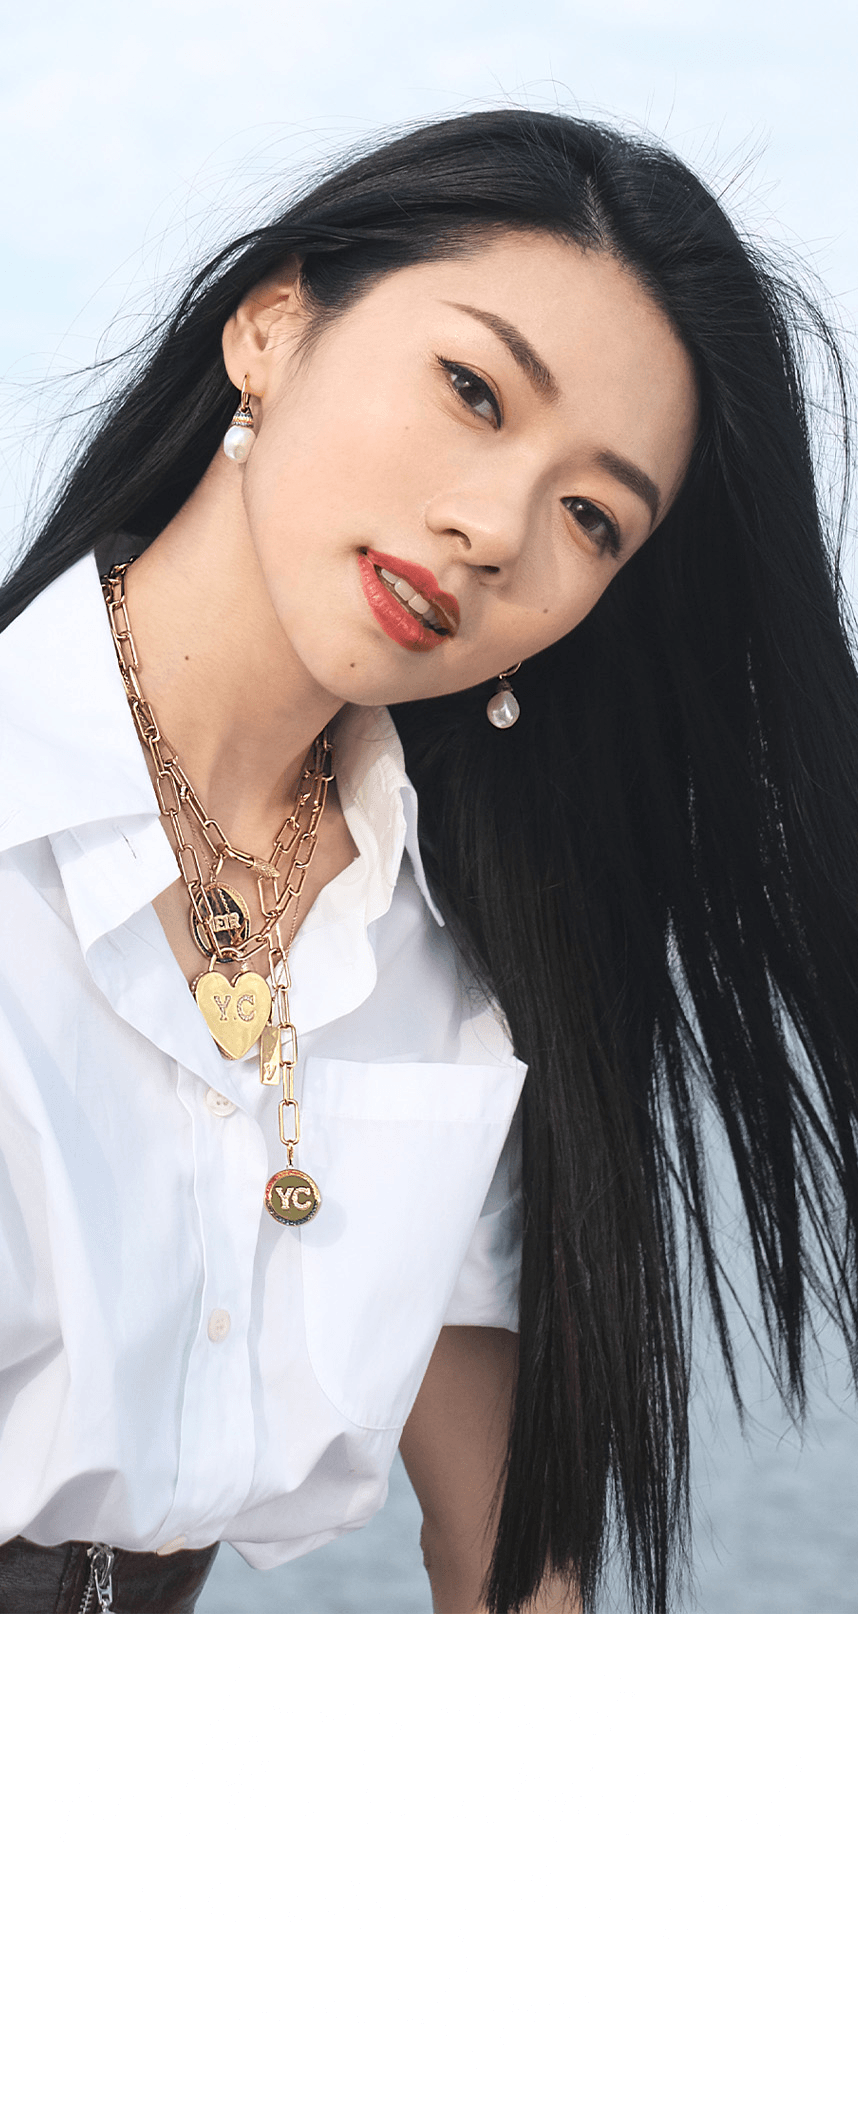 Yvonne Ching wearing APM Monaco jewelry